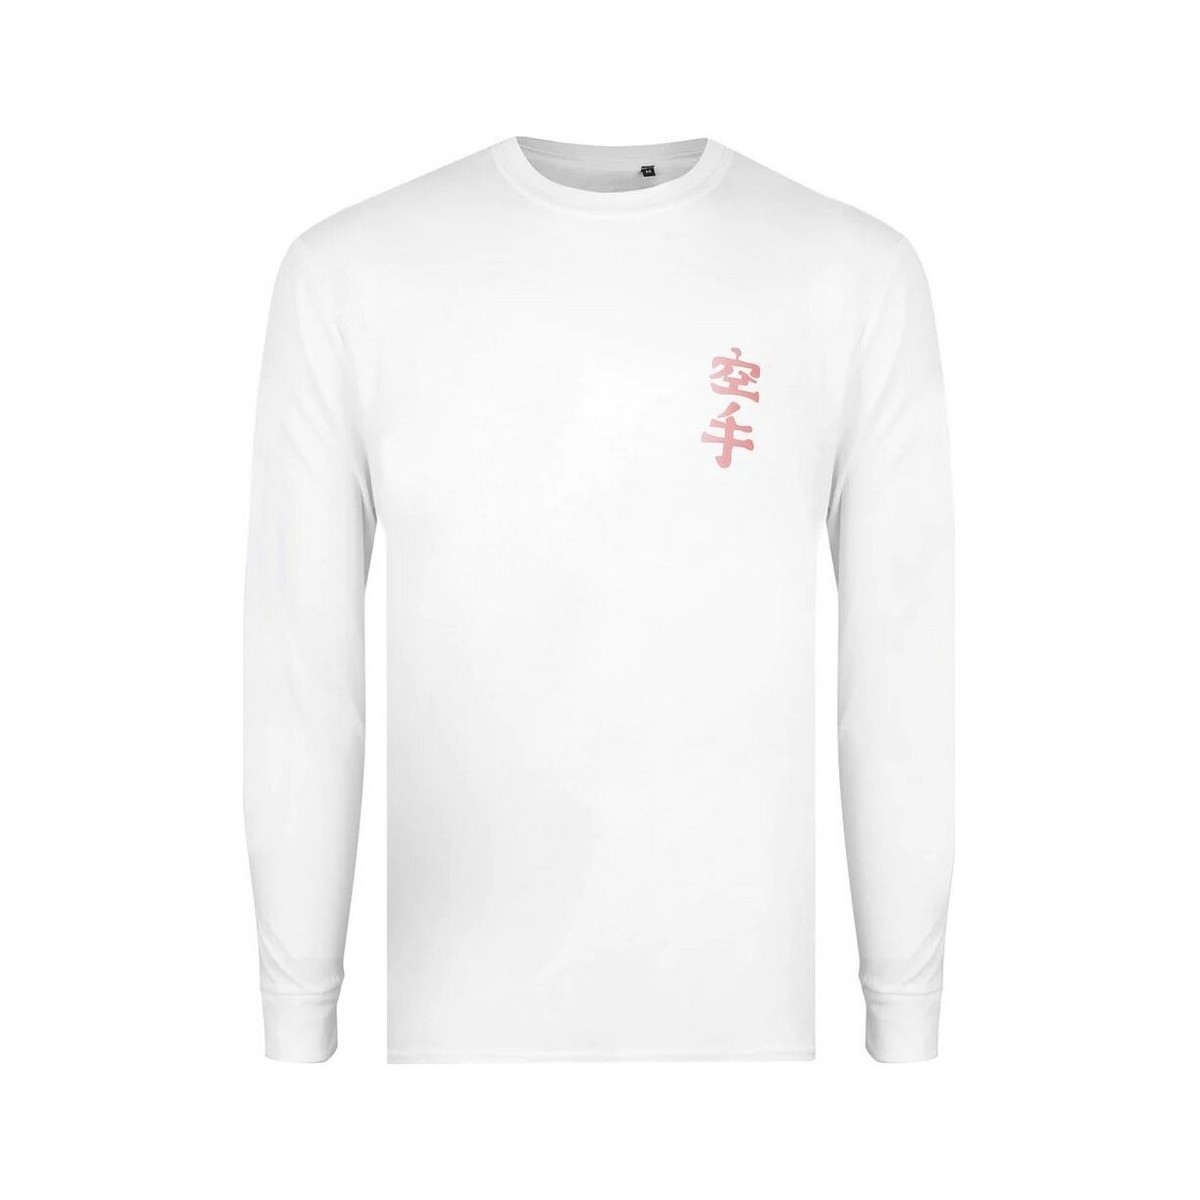 Abbigliamento Uomo T-shirts a maniche lunghe Cobra Kai Miyagi Do Karate Bianco